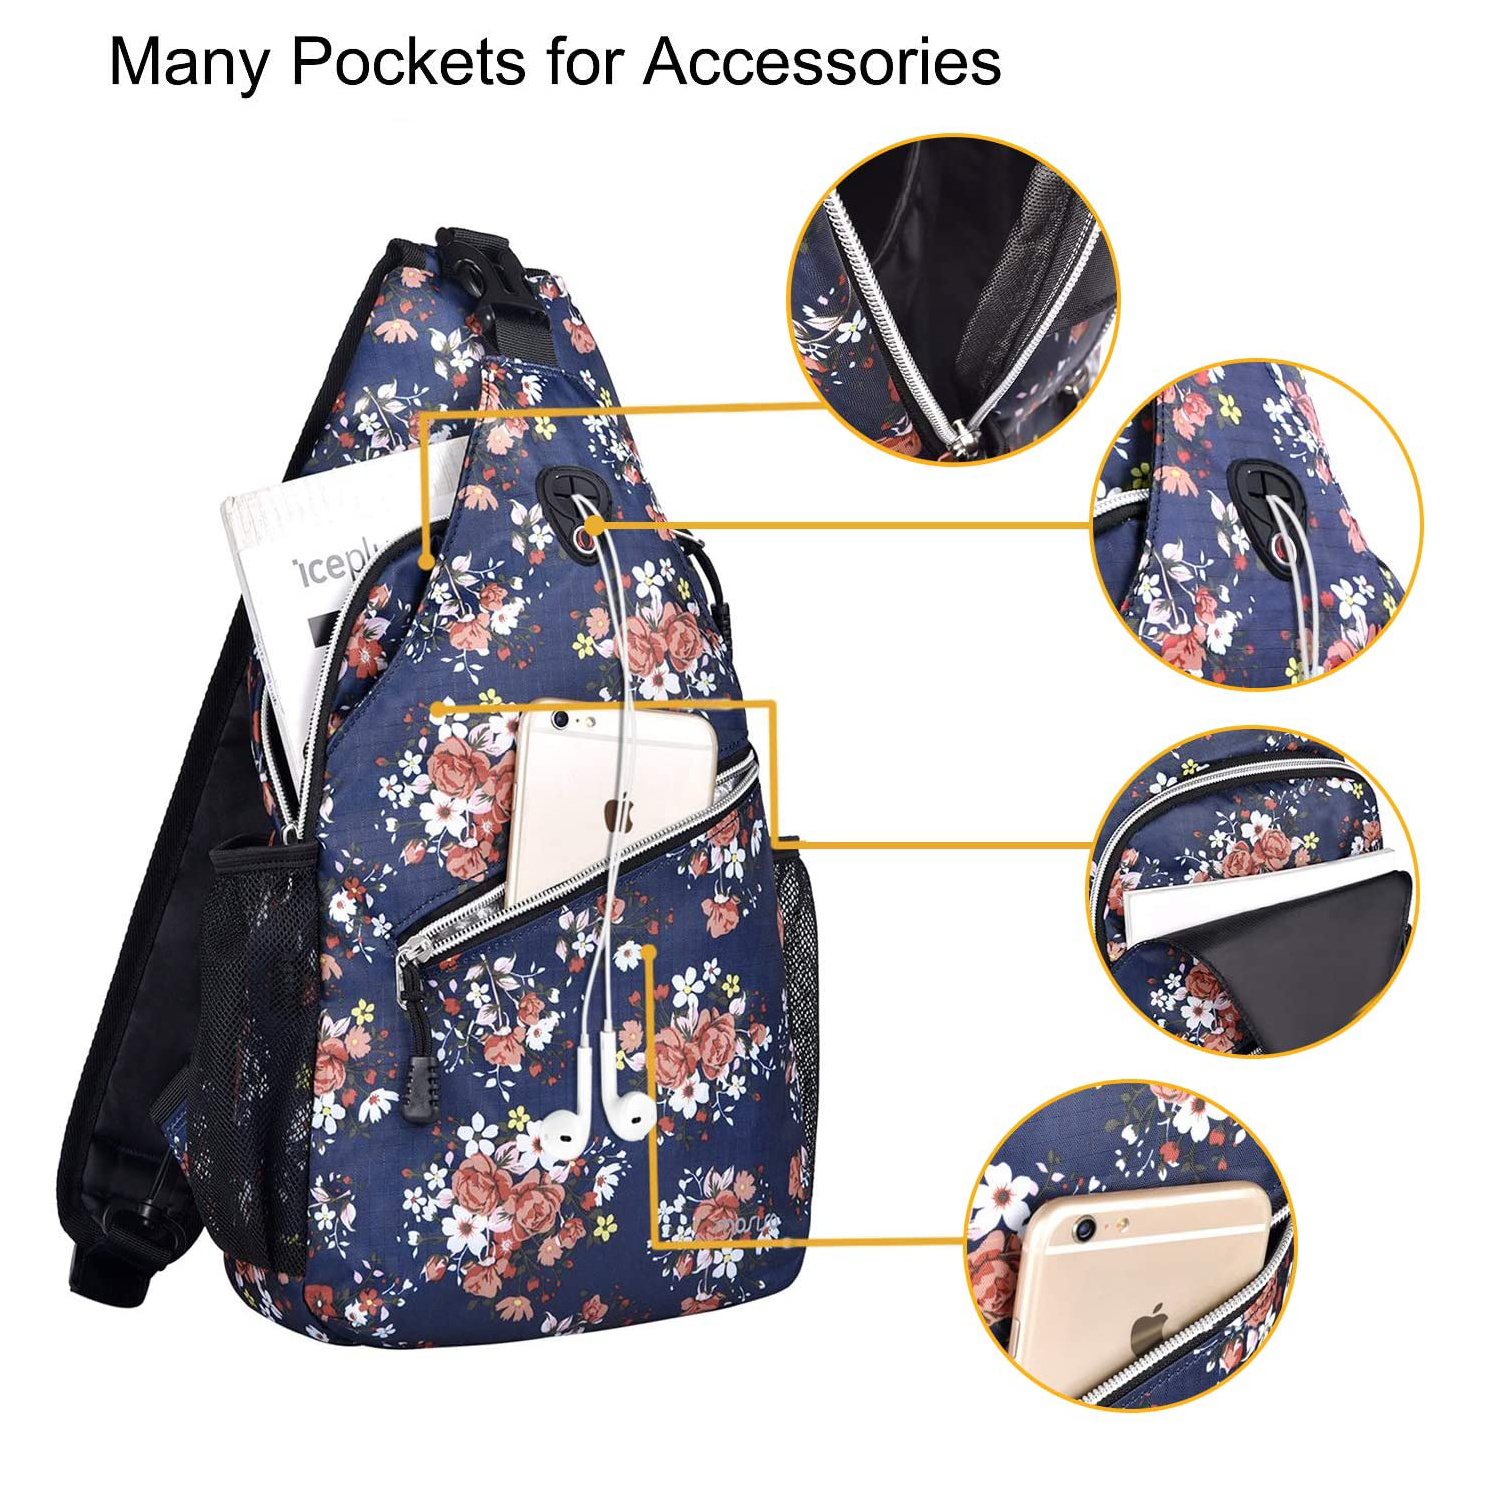 Mosiso Polyester Sling Bag Backpack Travel Hiking Outdoor Sport Crossbody Shoulder Bag Multipurpose Daypack for Women Men, Navy Blue Base Floral - image 2 of 6